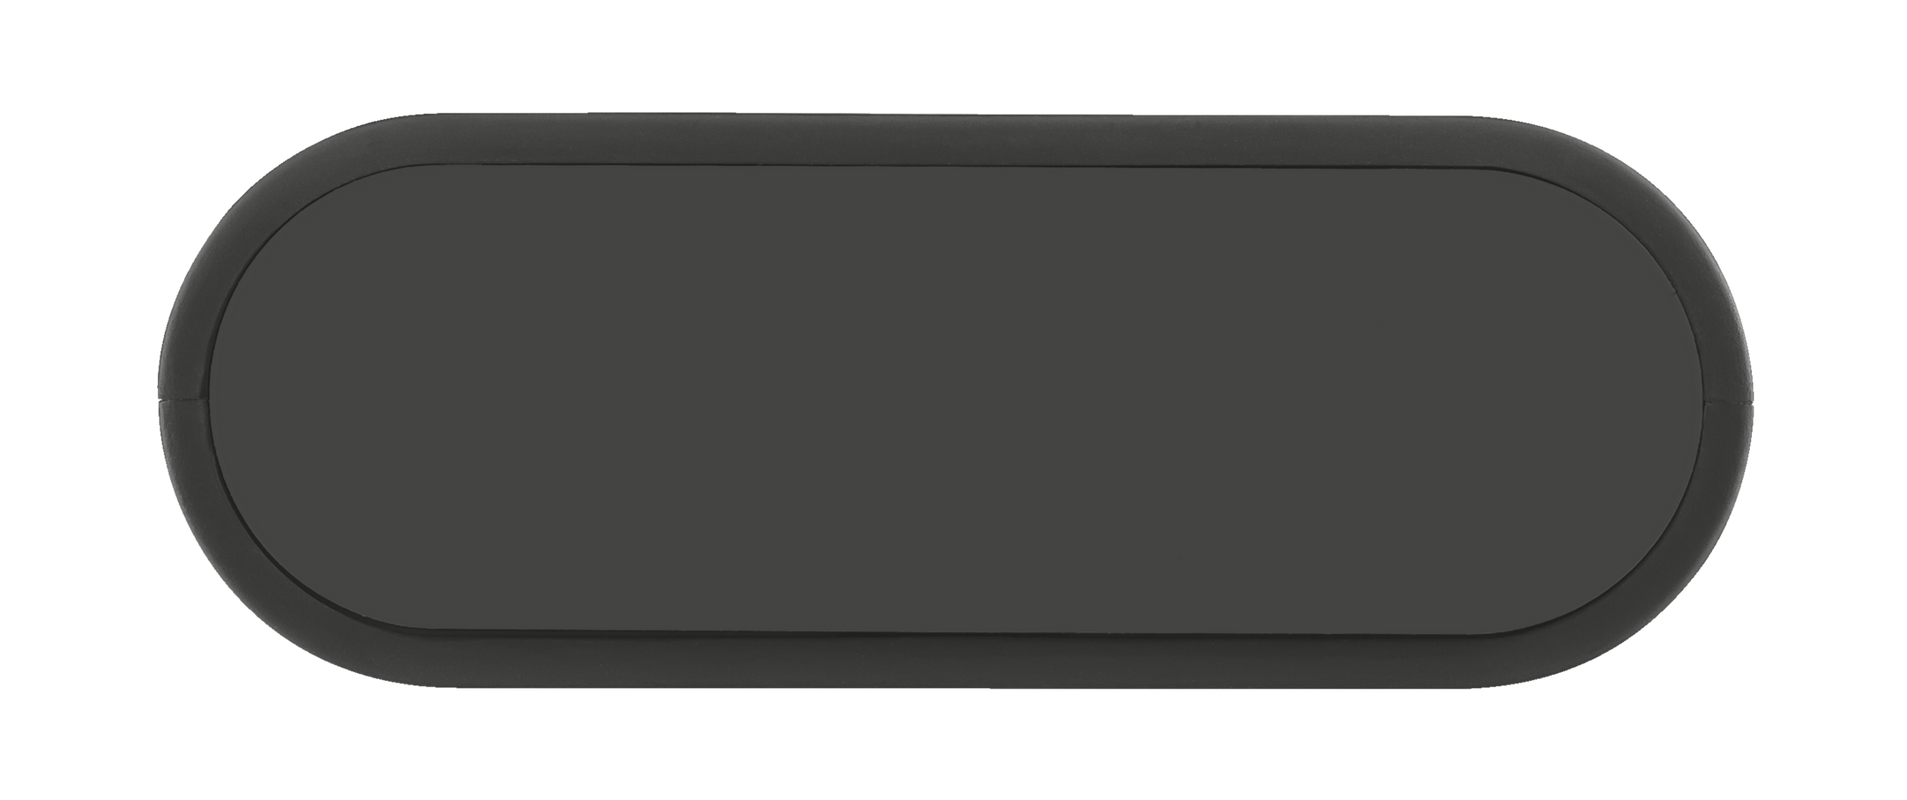 Cinco PowerBank 13000 Portable Charger - black-Top